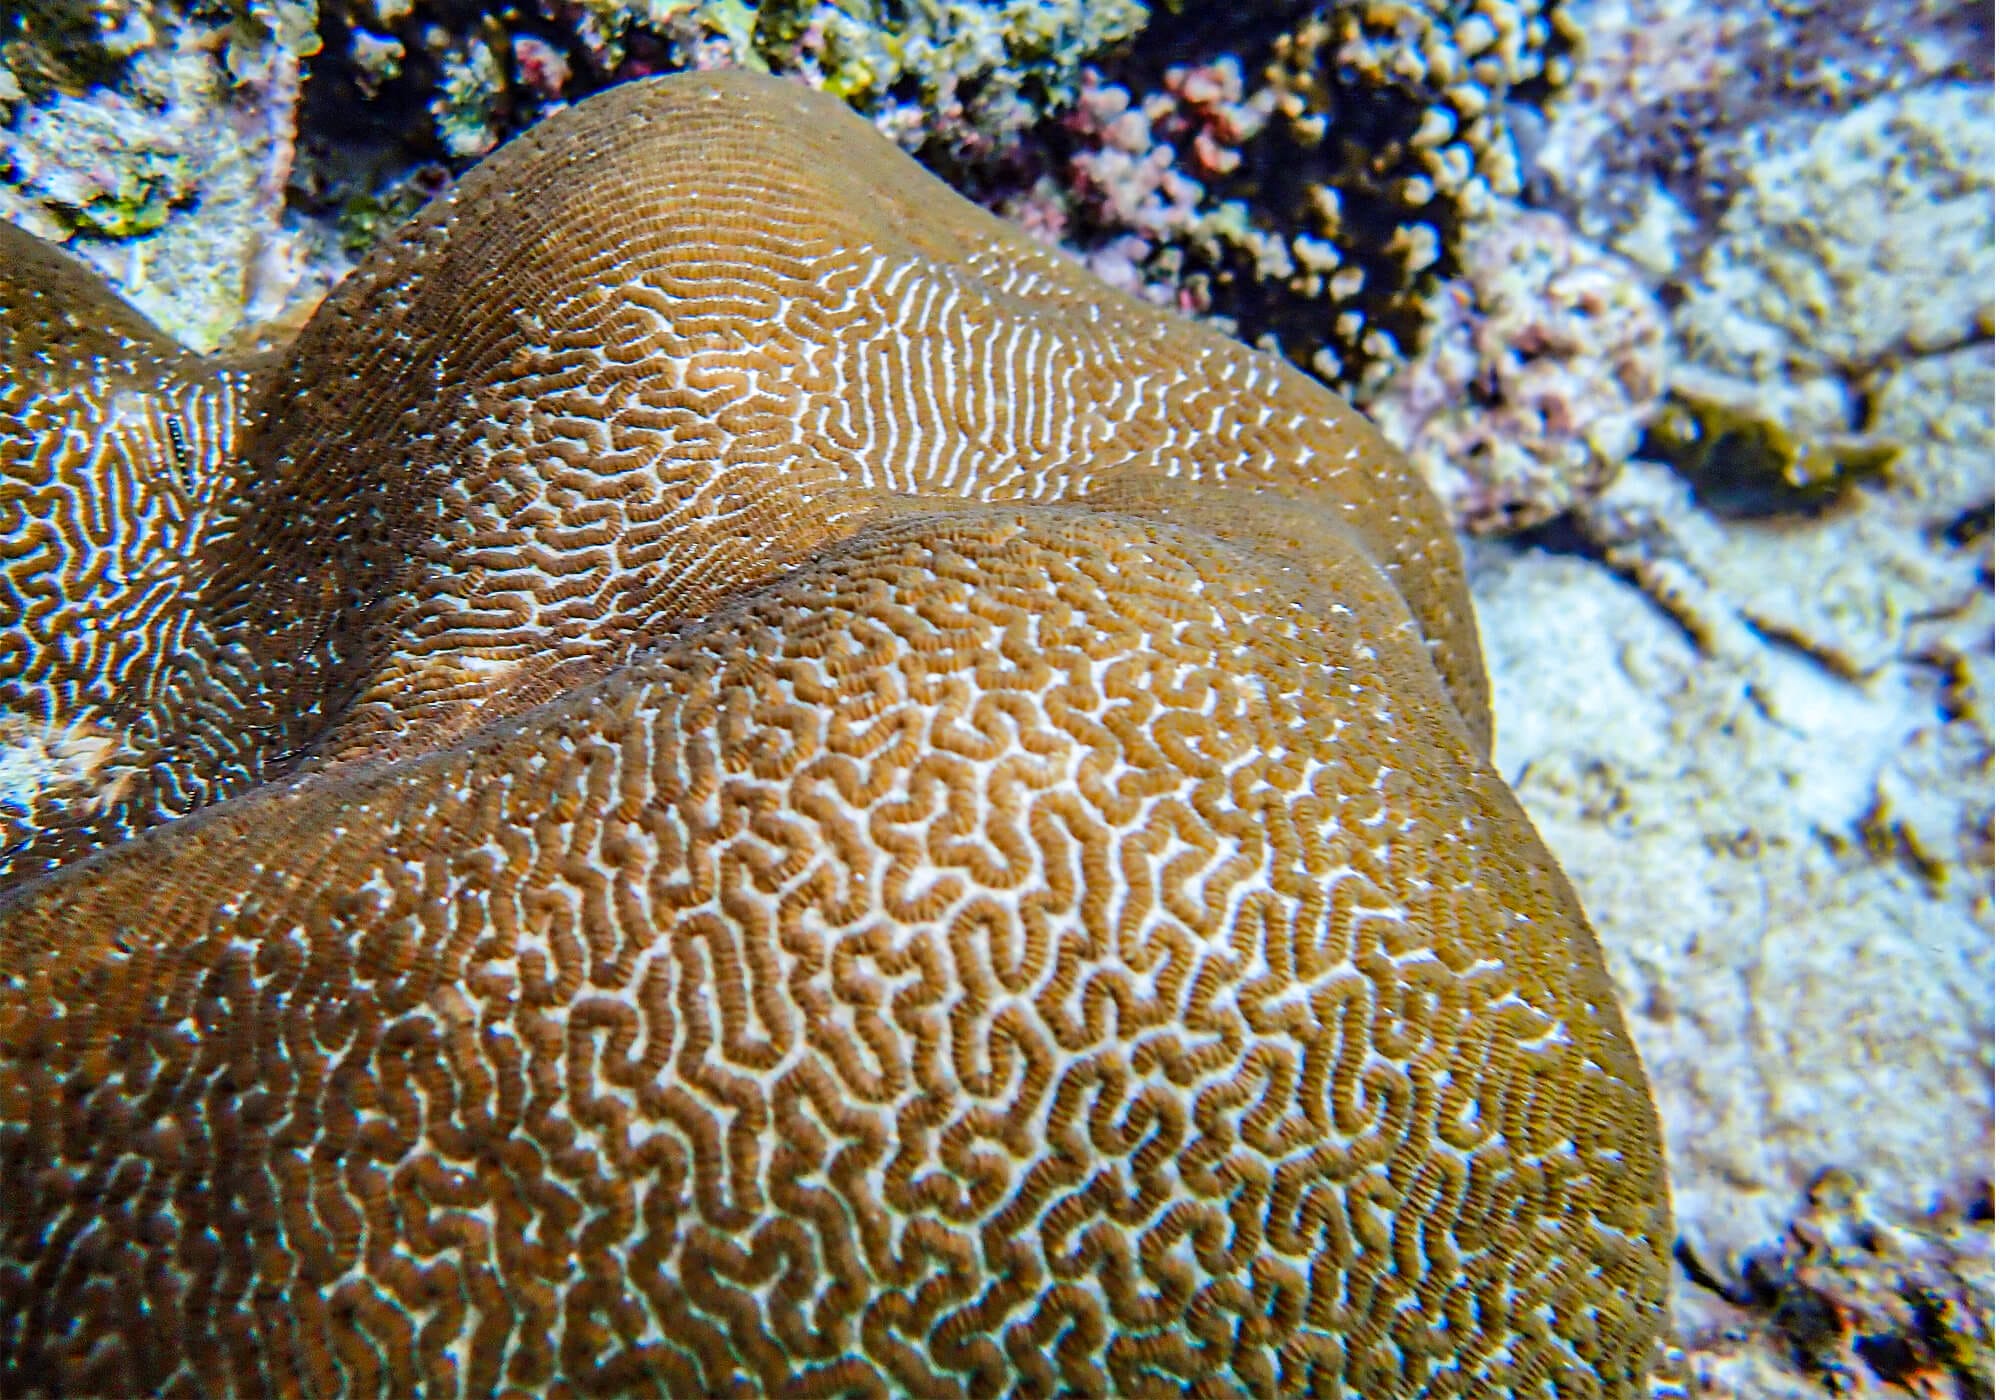 Brain Coral at Pileh Lagoon